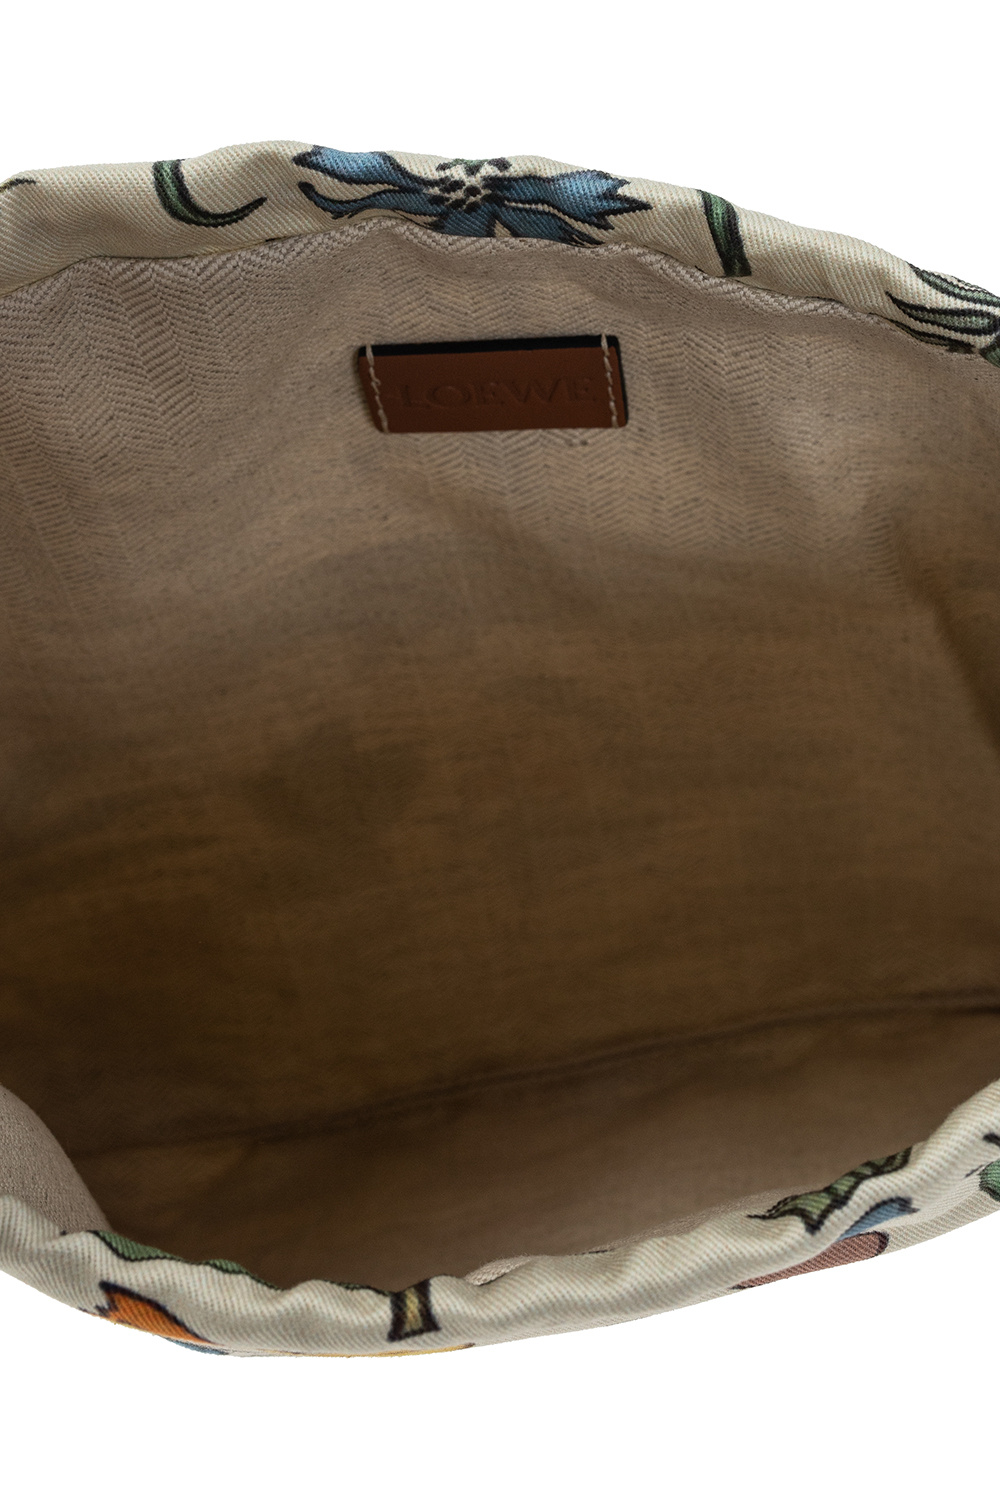 Loewe Patterned handbag